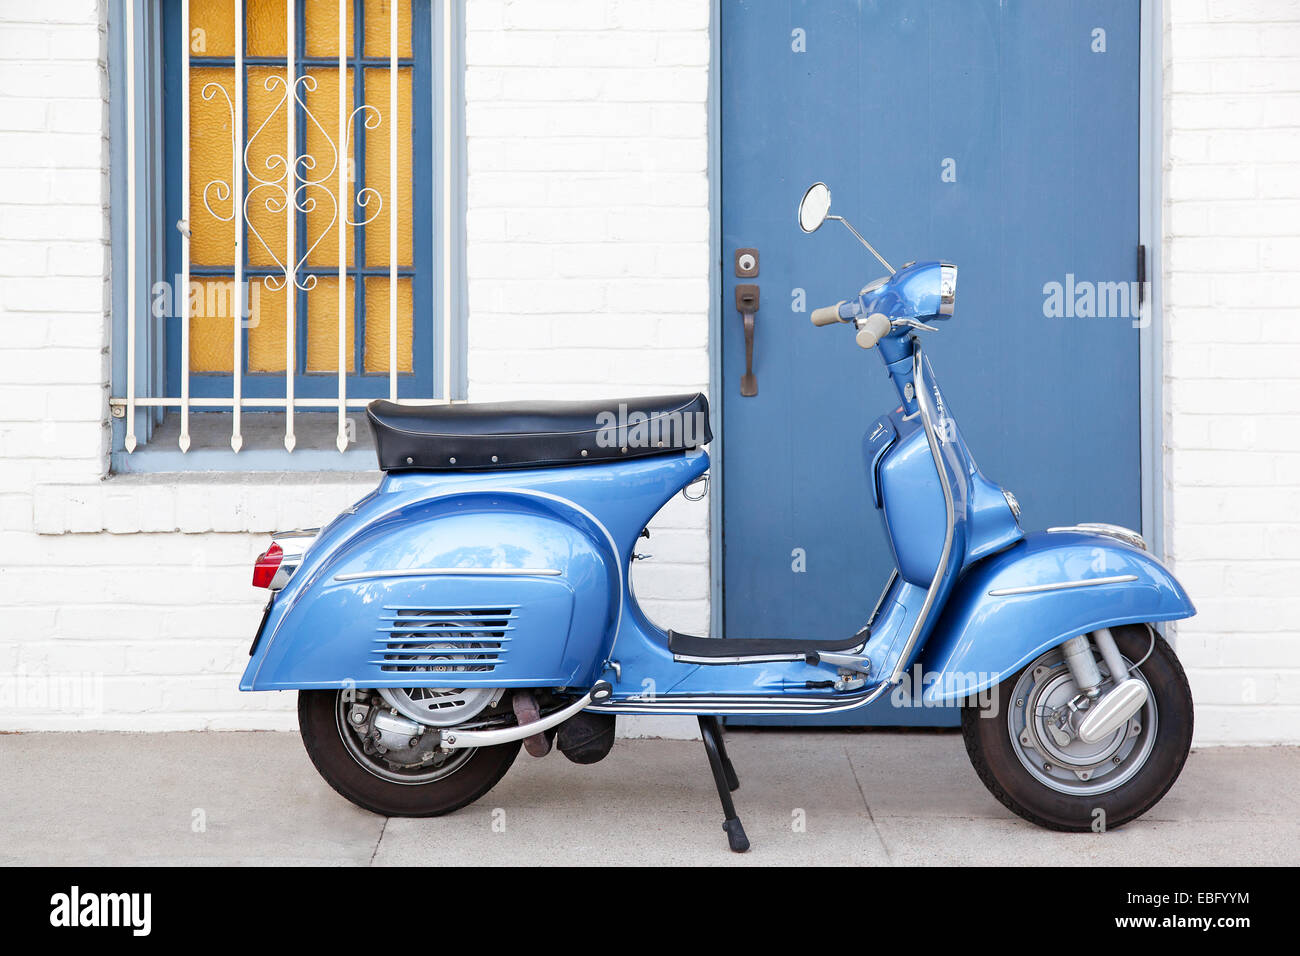 Profil des scooters Vespa bleu clair en face du bâtiment Photo Stock - Alamy